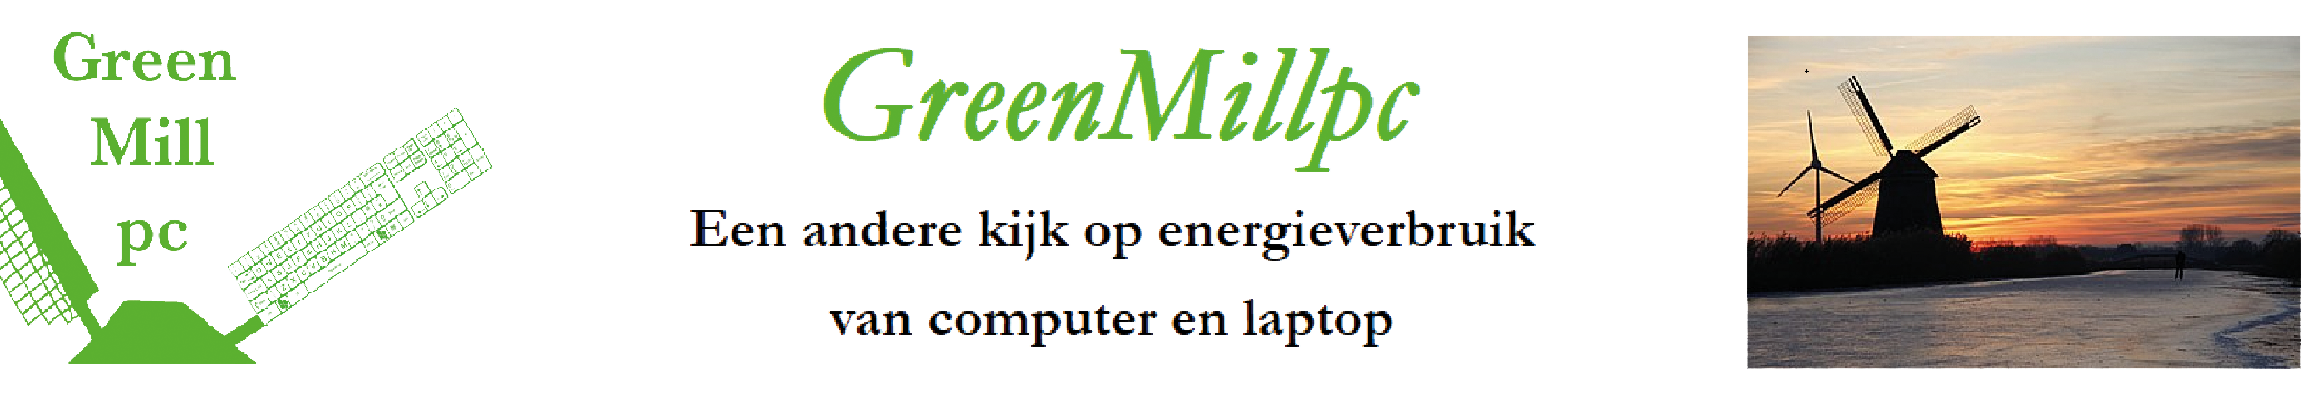 GreenMillpc